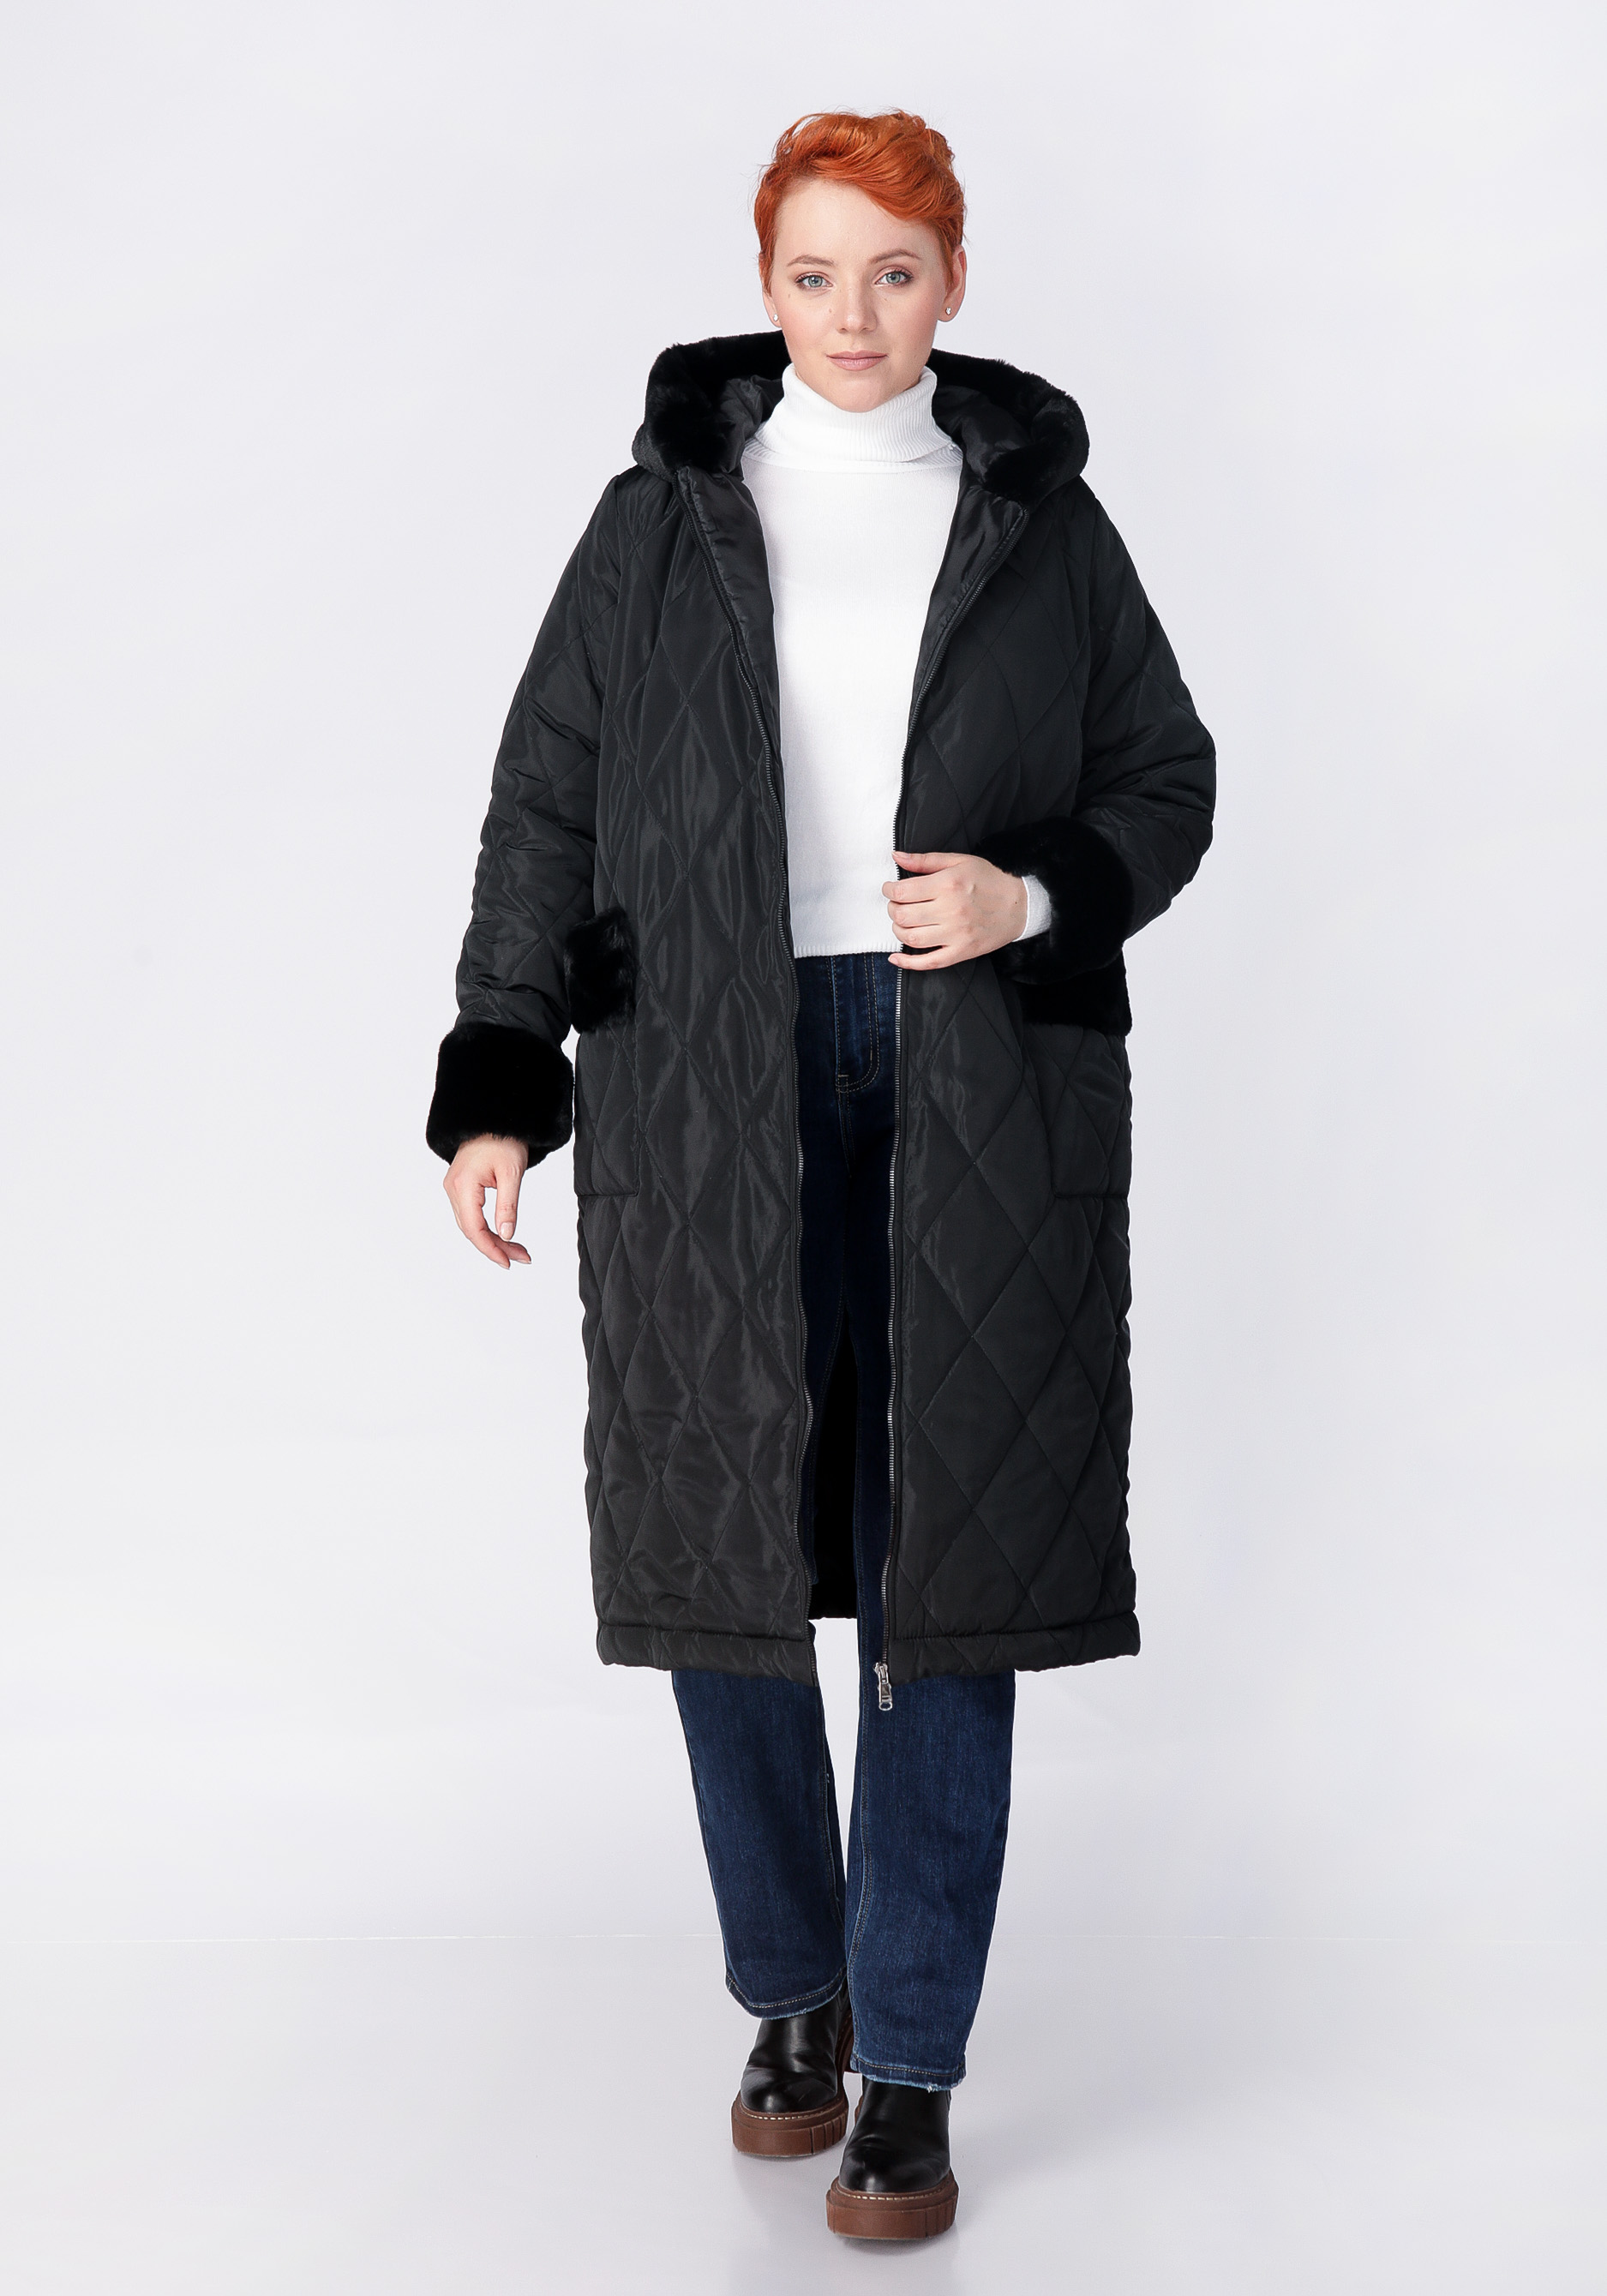 Пальто с меховой опушкой на капюшоне, цвет черный, размер 48